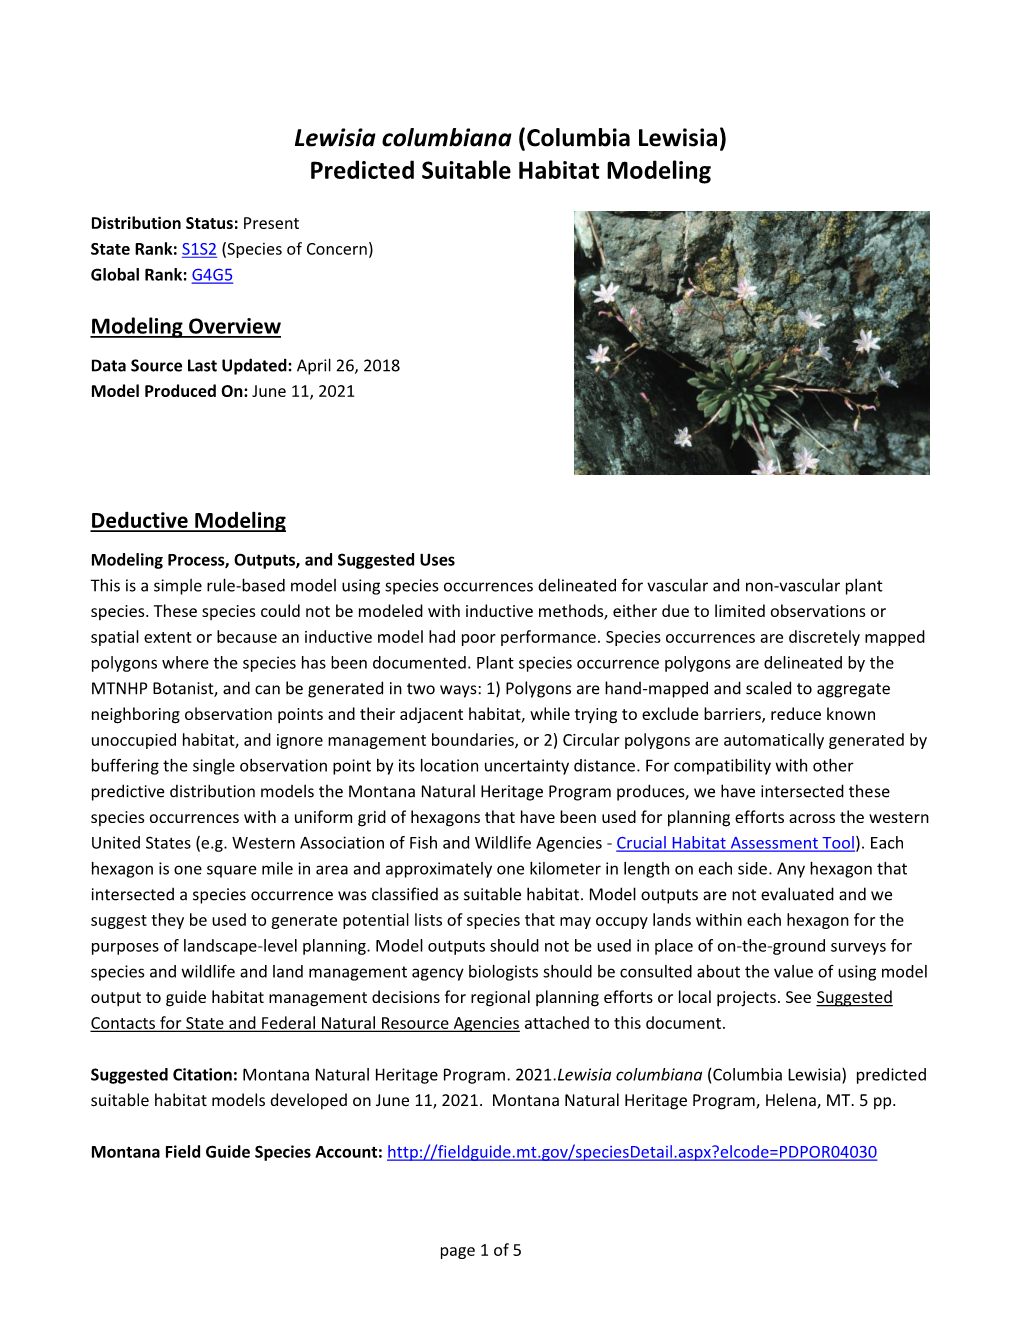 Lewisia Columbiana (Columbia Lewisia) Predicted Suitable Habitat Modeling